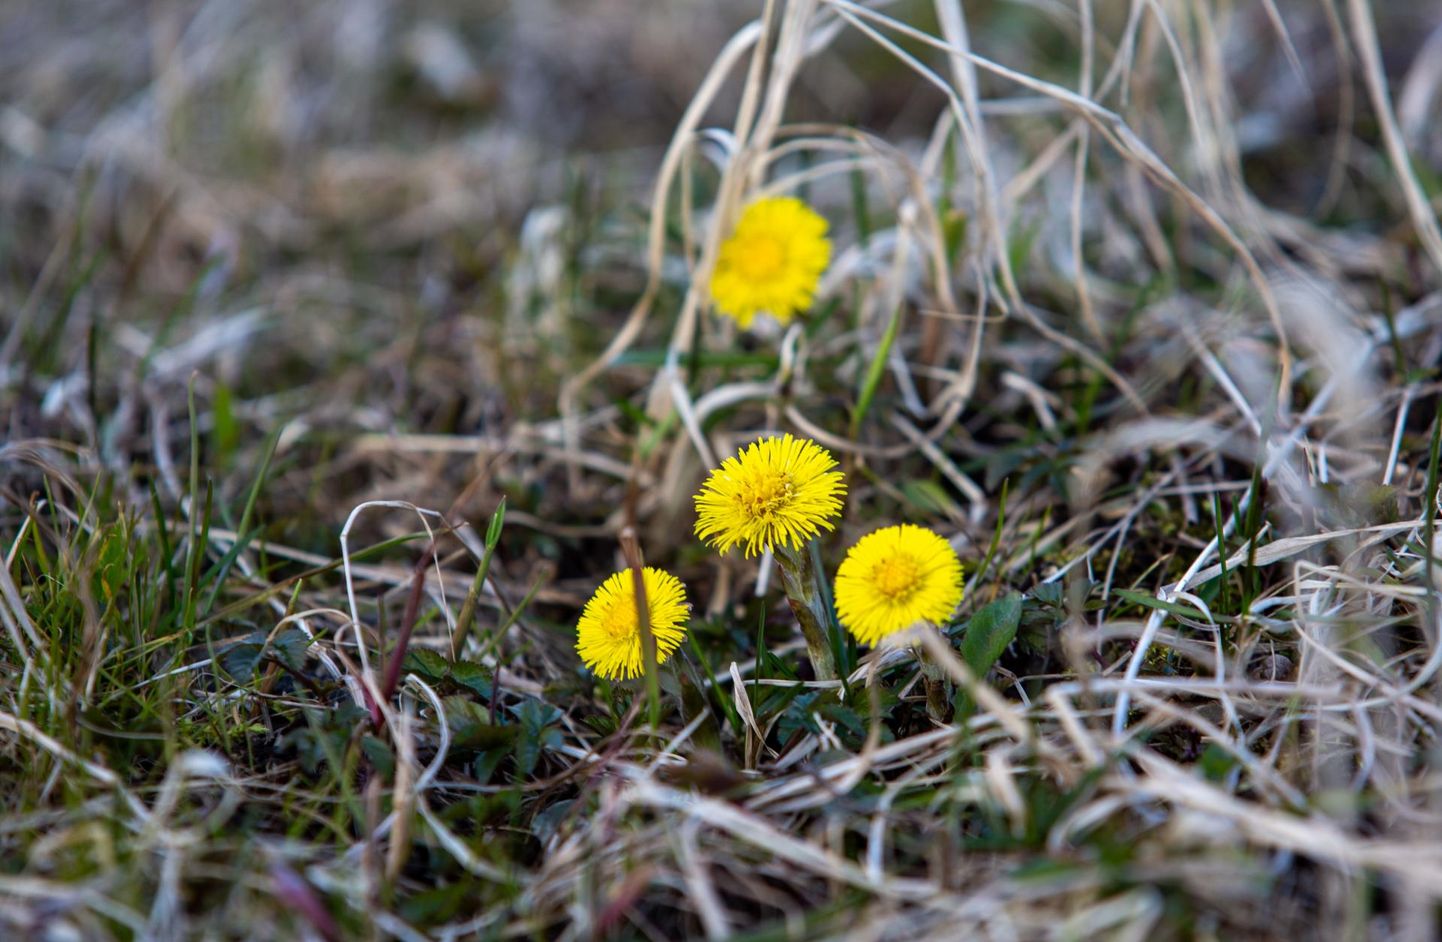 Märtsis hakkas loodus tasapisi õide puhkema, ehkki lilleilu oli näha saanud talvelgi. Pilt on tehtud 20. märtsil.